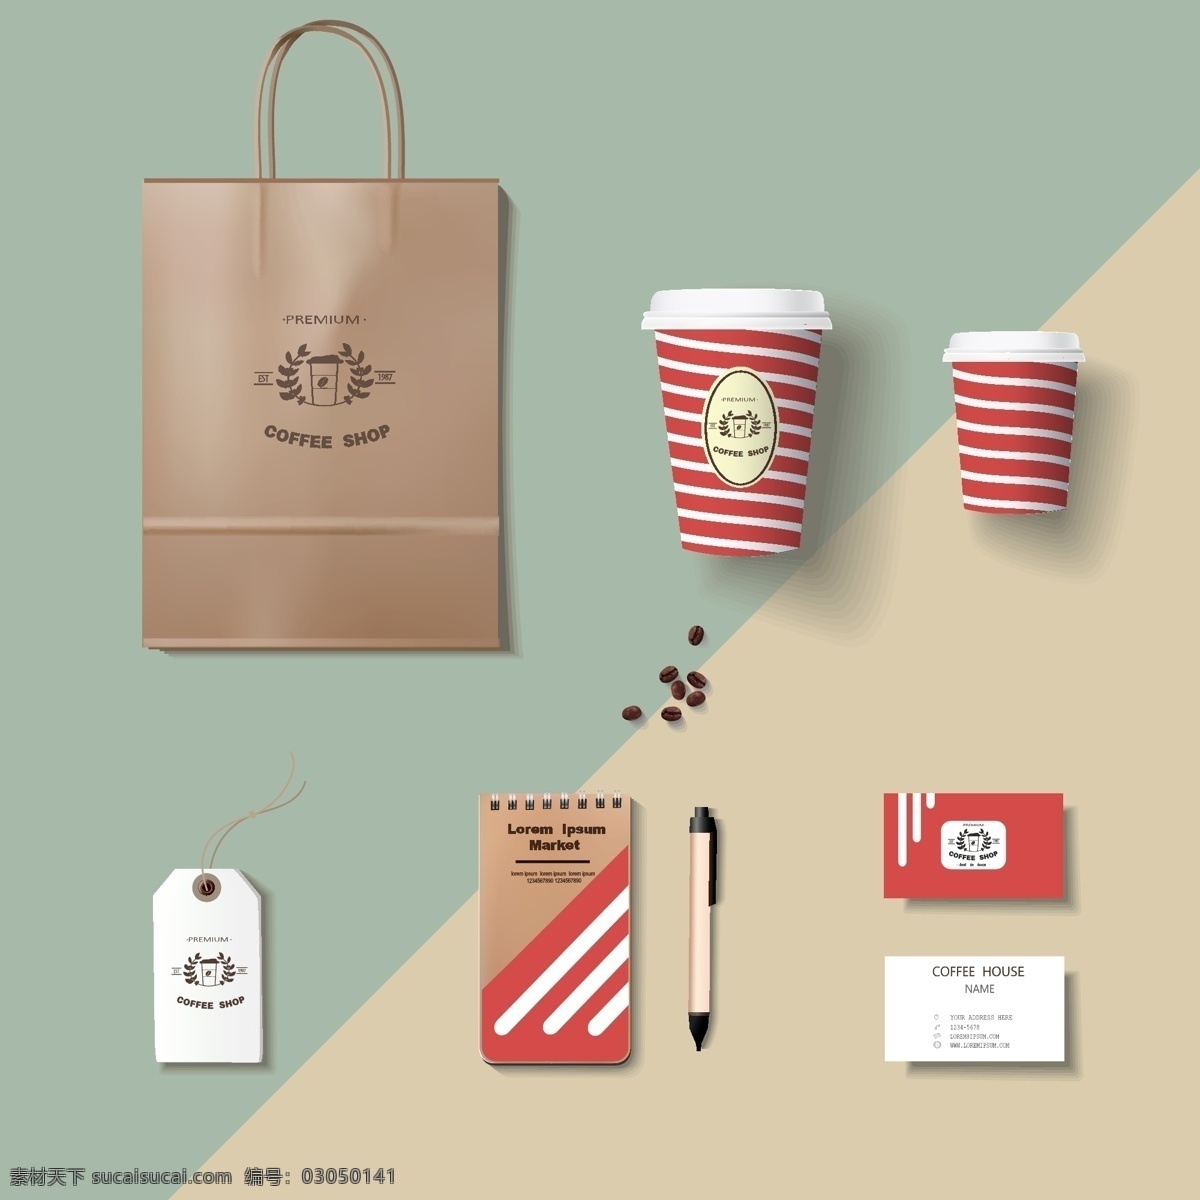 咖啡 店铺 视觉 识别 元素 矢量 系统 矢量图 设计素材 视觉识别 企业vi 企业ci 图案 咖啡杯 手提袋 吊牌 名片 咖啡店 灰色